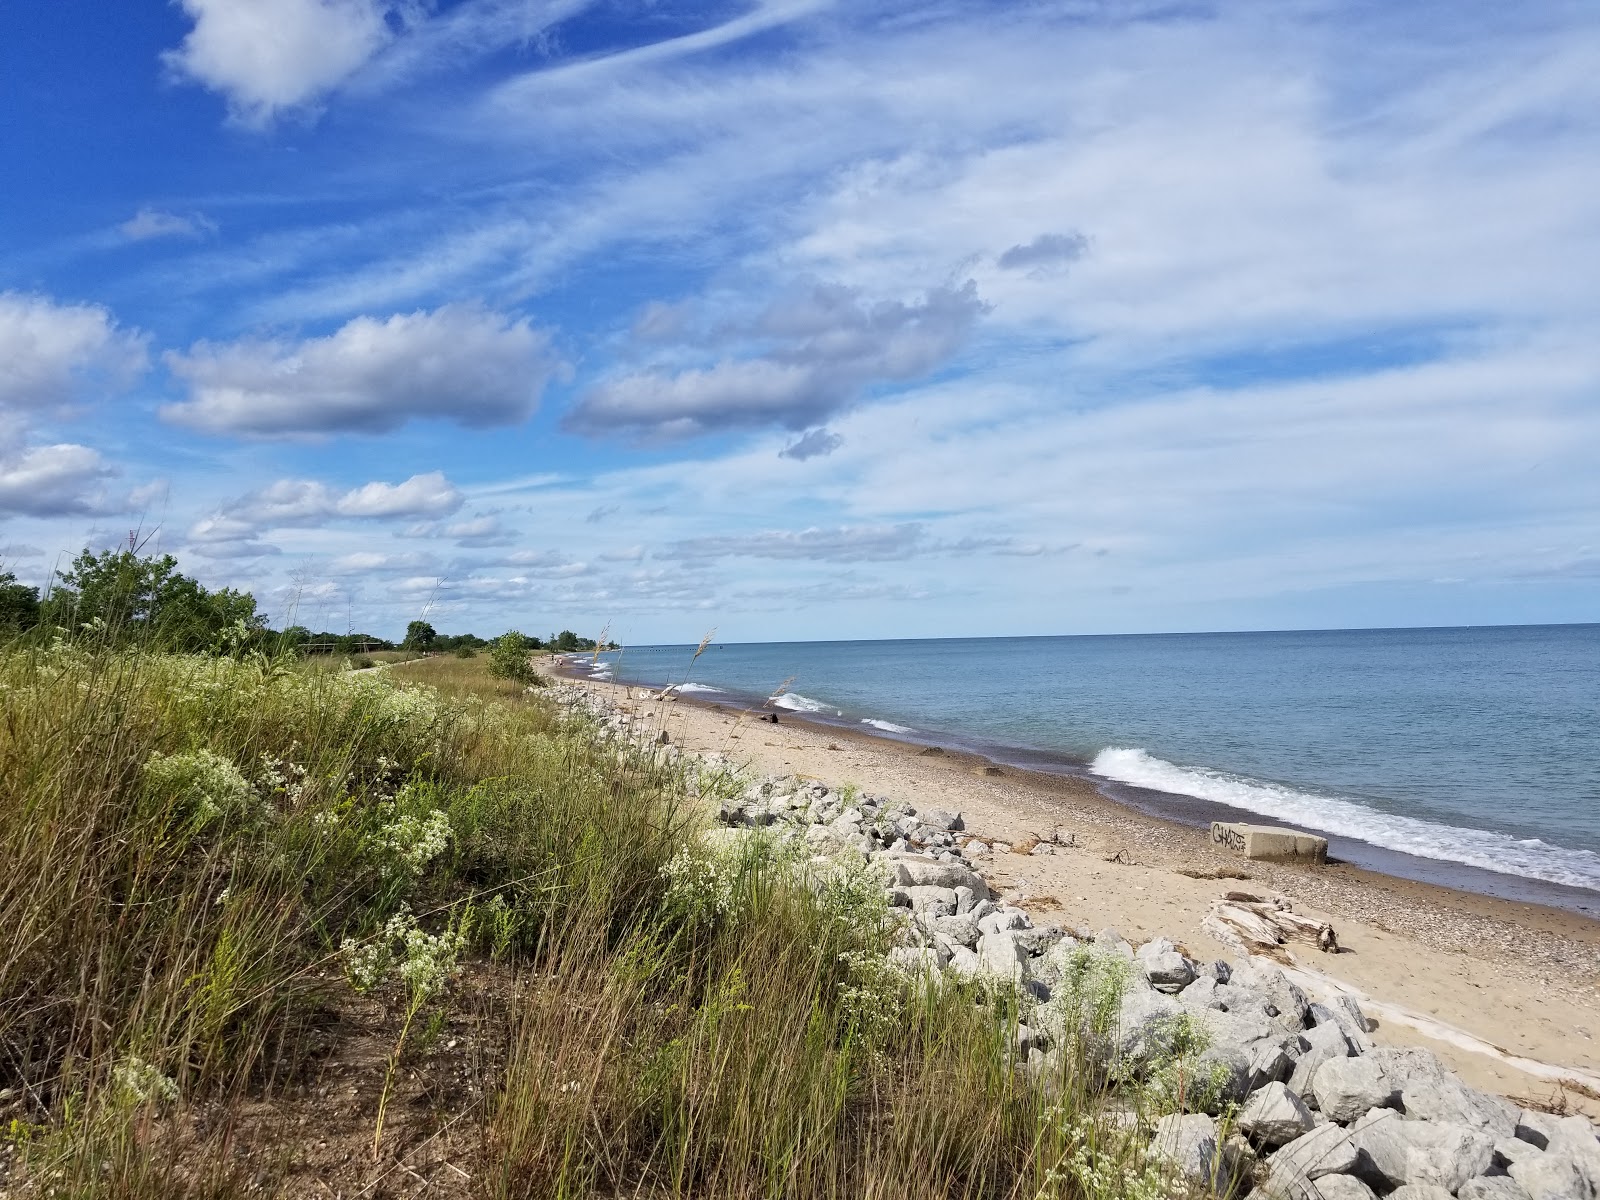 Fotografie cu Illinois Beach - locul popular printre cunoscătorii de relaxare